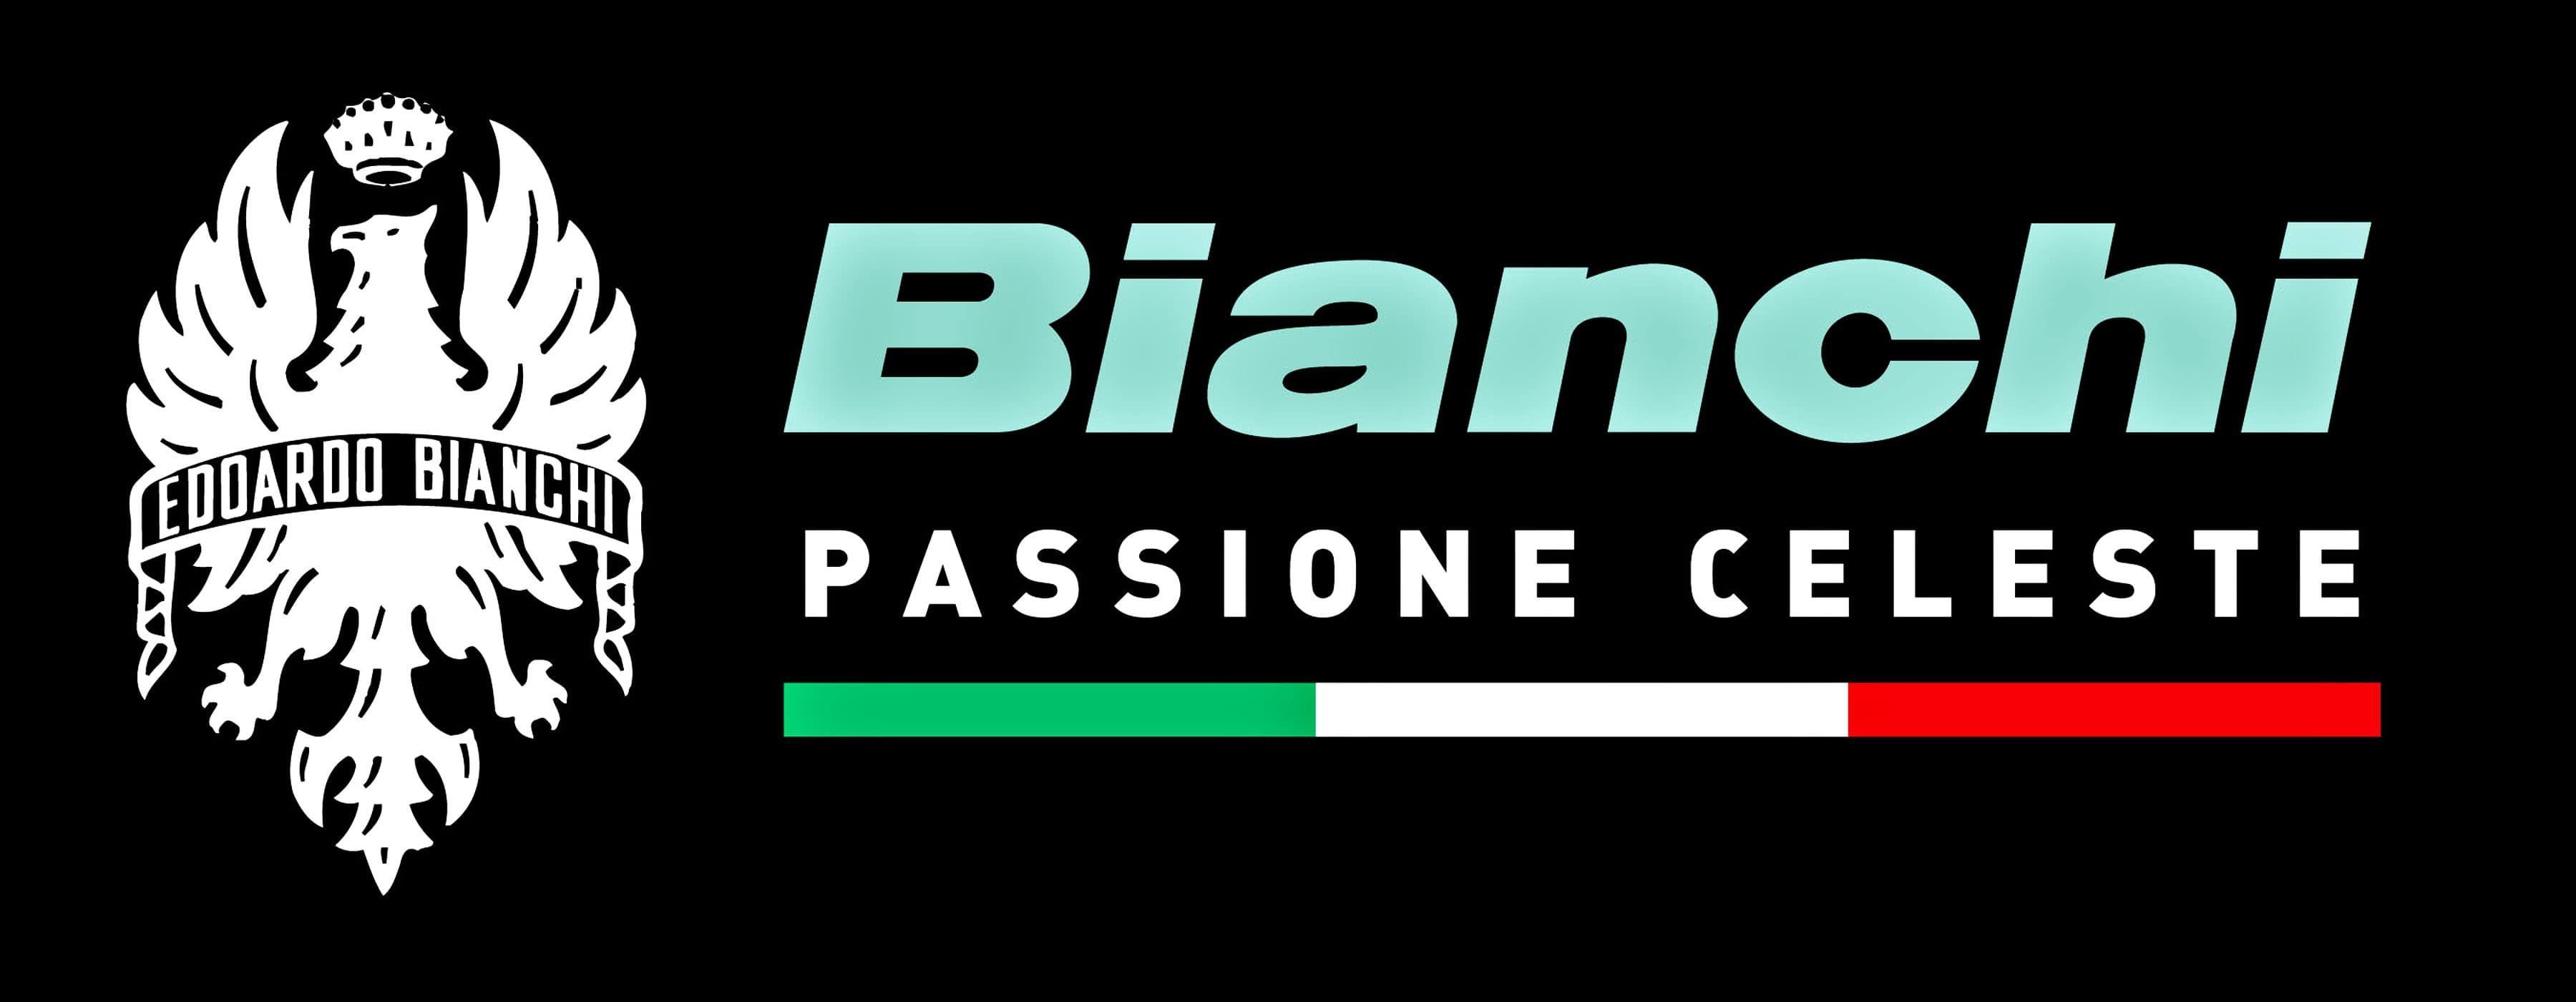 Bianchi Logo - Bianchi Logo Motorcycles | Motorcycle Logos | Bike logo, Motorcycle ...